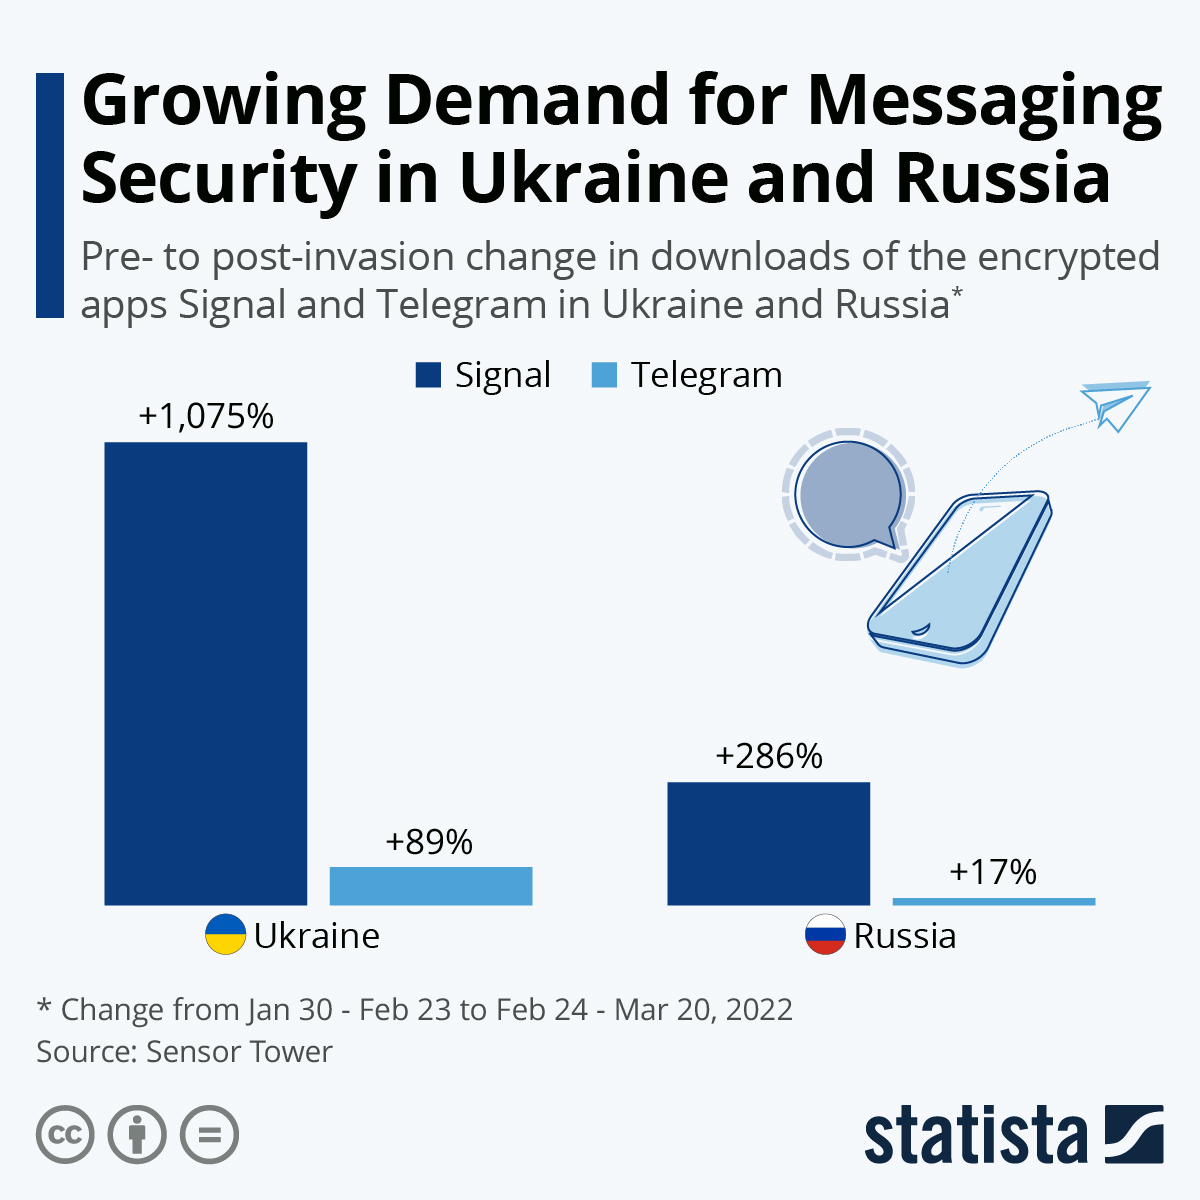 Завантаження програм Signal та Telegram в Україні та Росії до і після початку війни